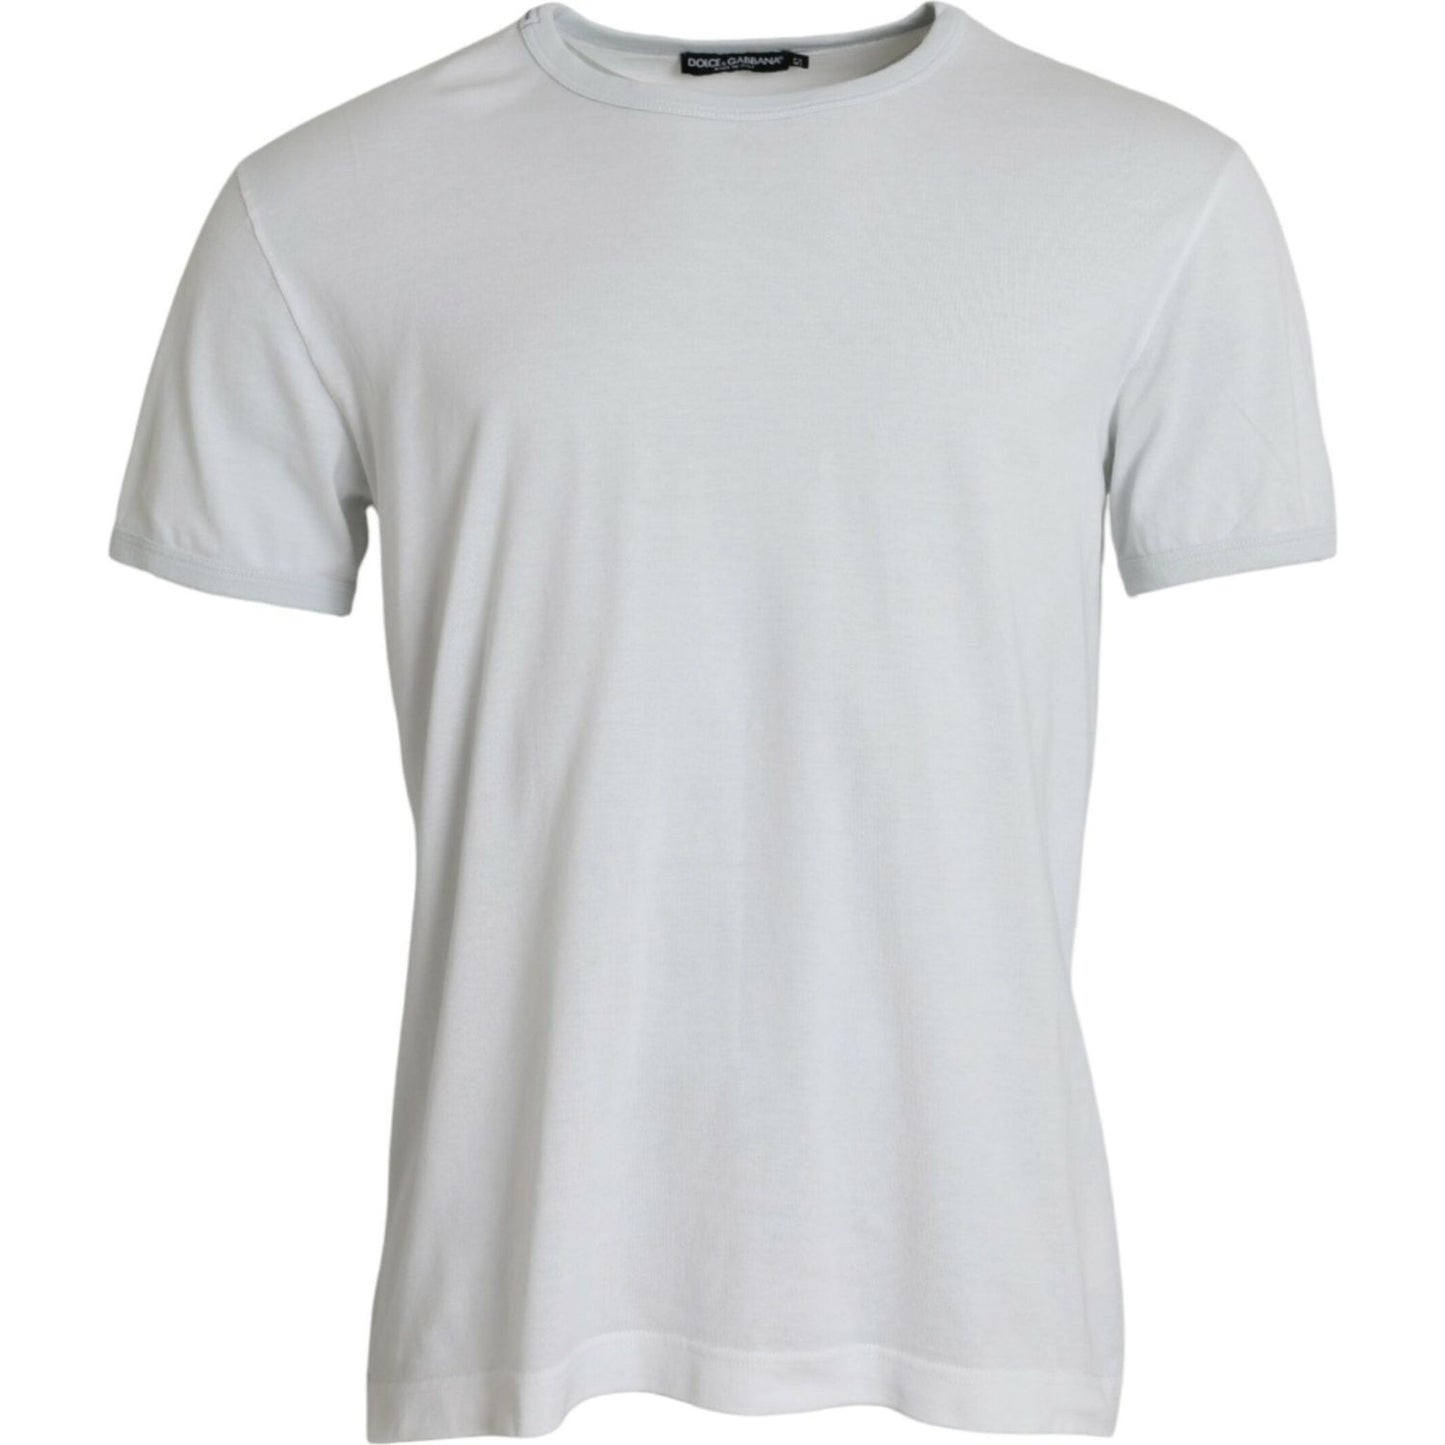 Dolce & Gabbana White Cotton Round Neck Short Sleeve T-shirt white-cotton-round-neck-short-sleeve-t-shirt